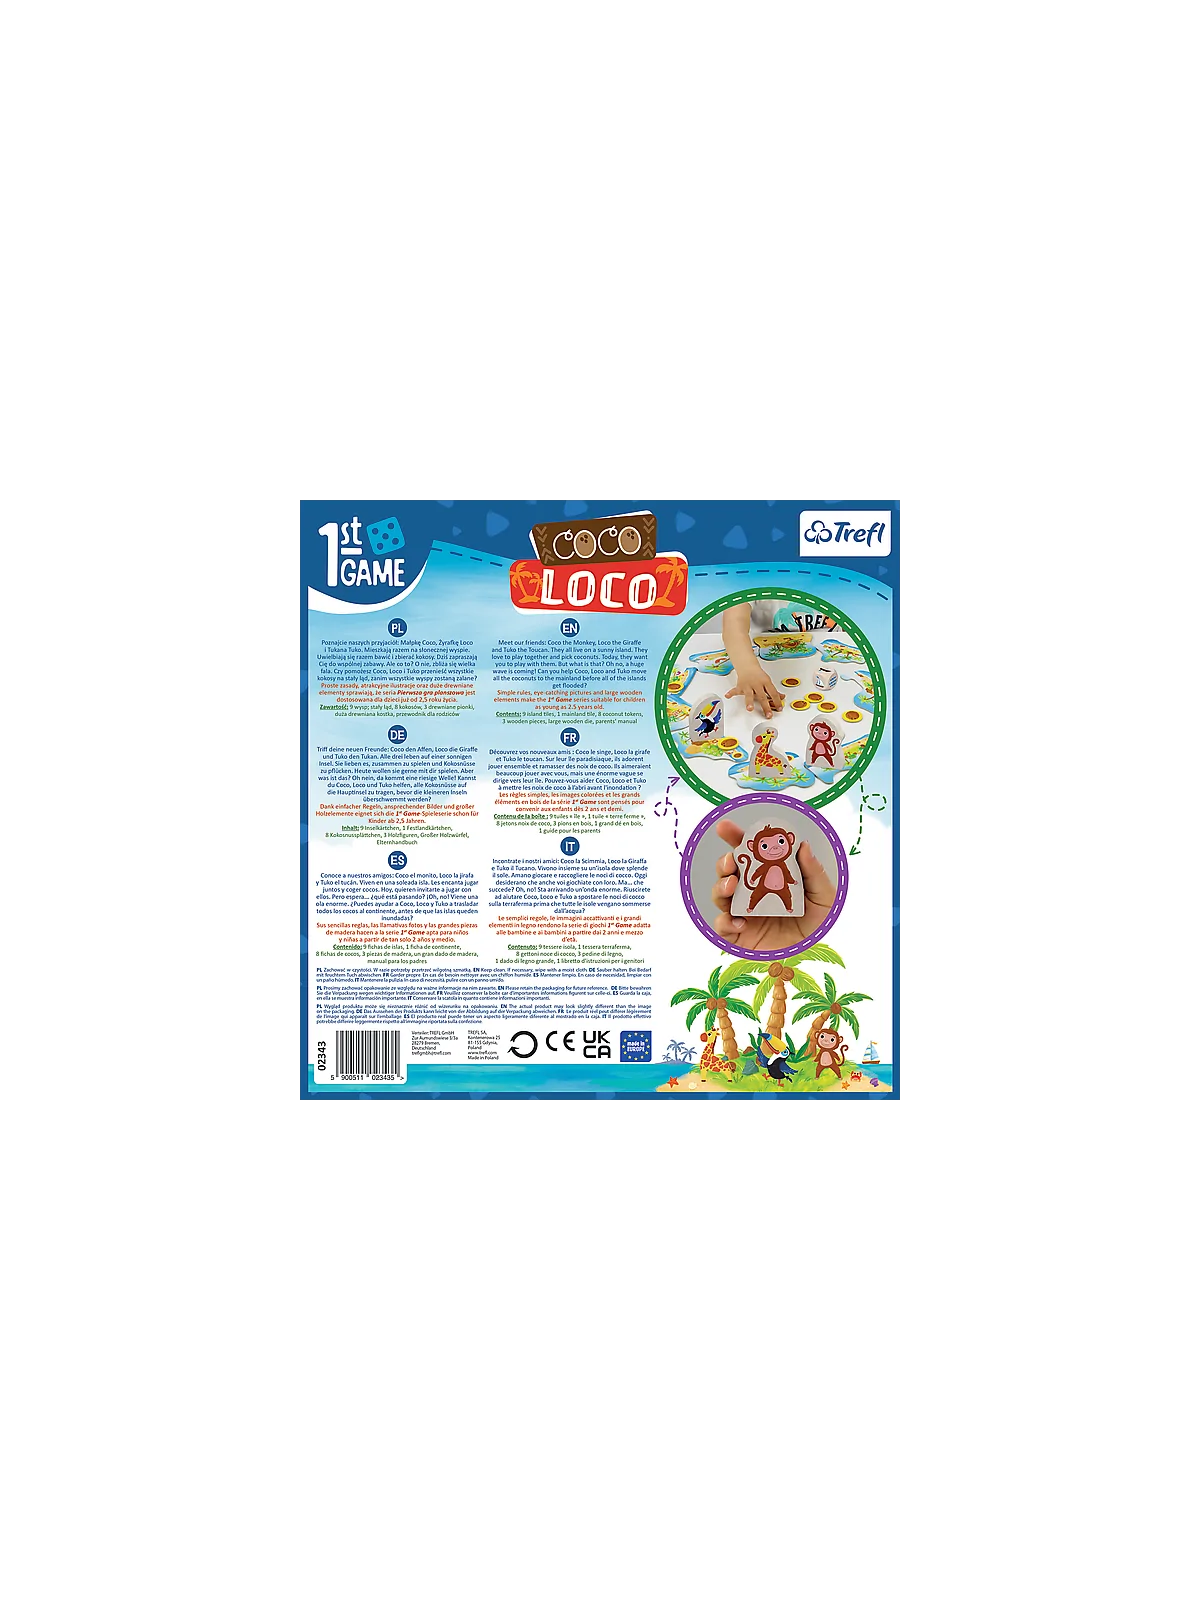 Comprar Coco Loco barato al mejor precio 19,99 € de Atomo Games